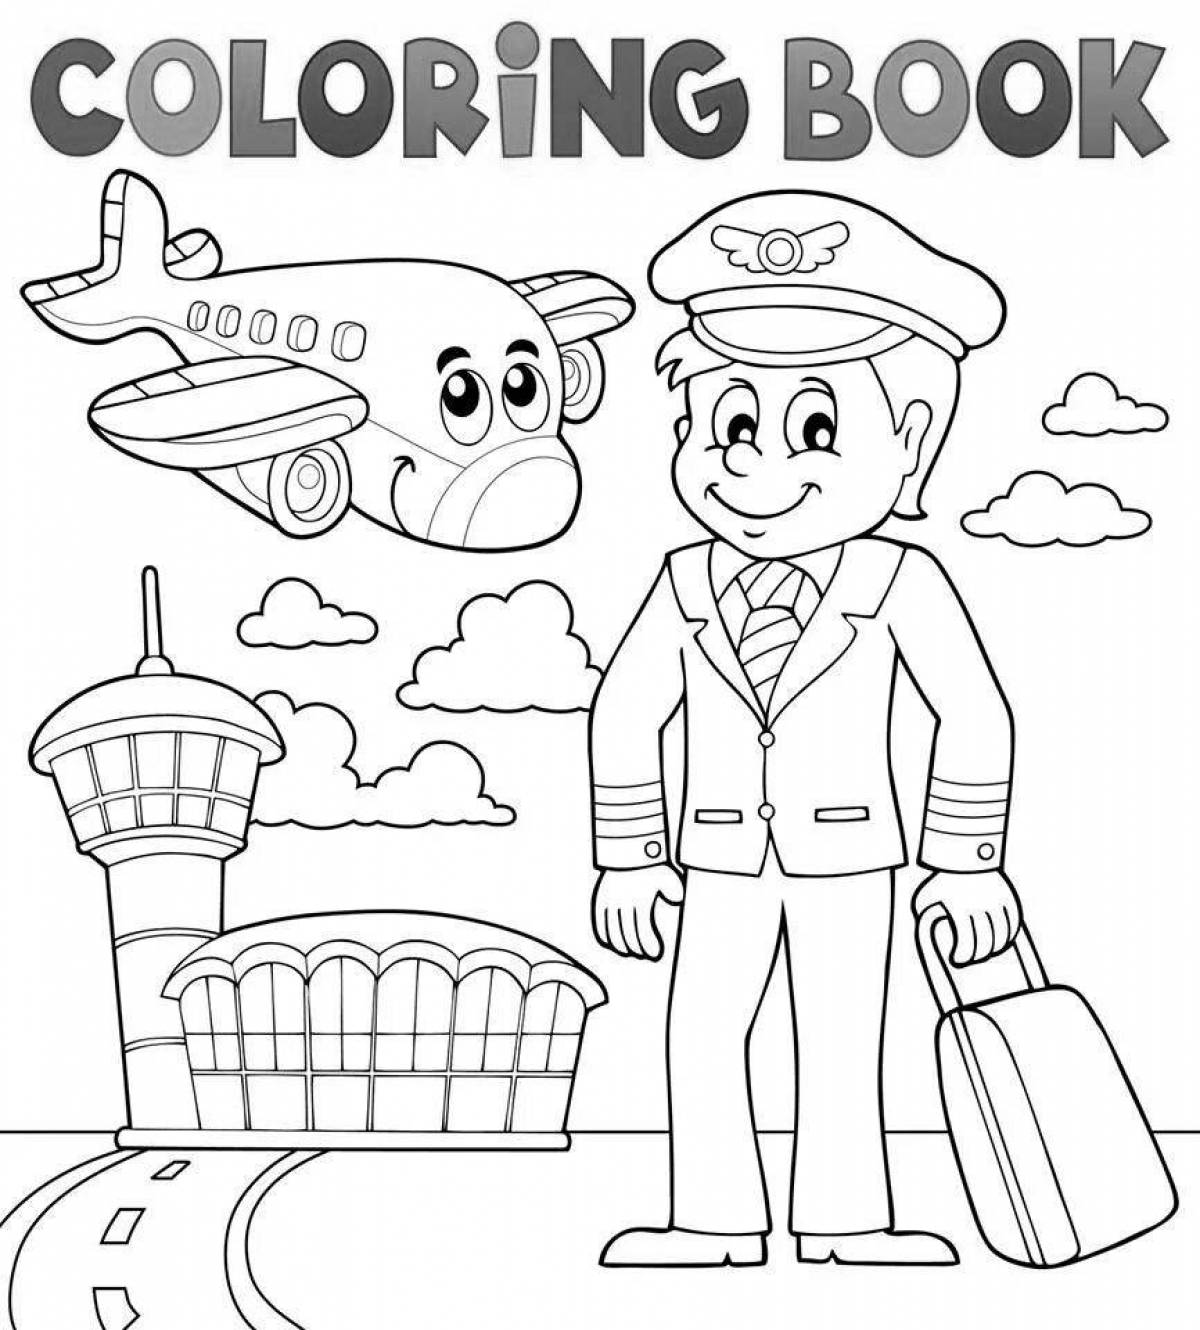 Train driver coloring book